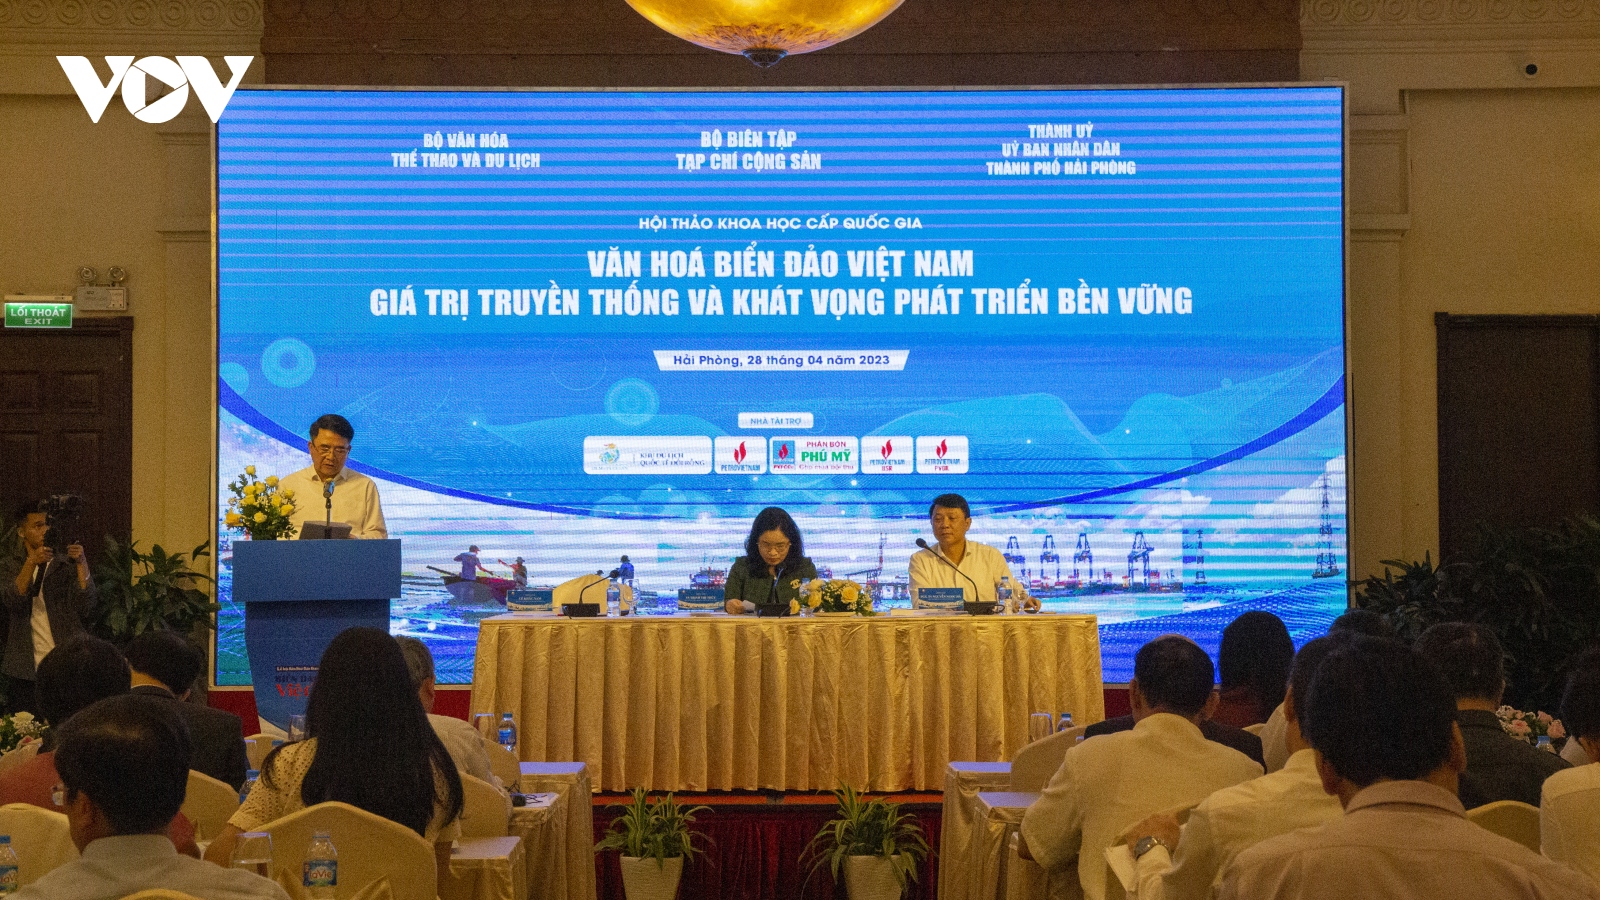 Văn hóa Biển đảo Việt Nam - Giá trị truyền thống và khát vọng phát triển bền vững